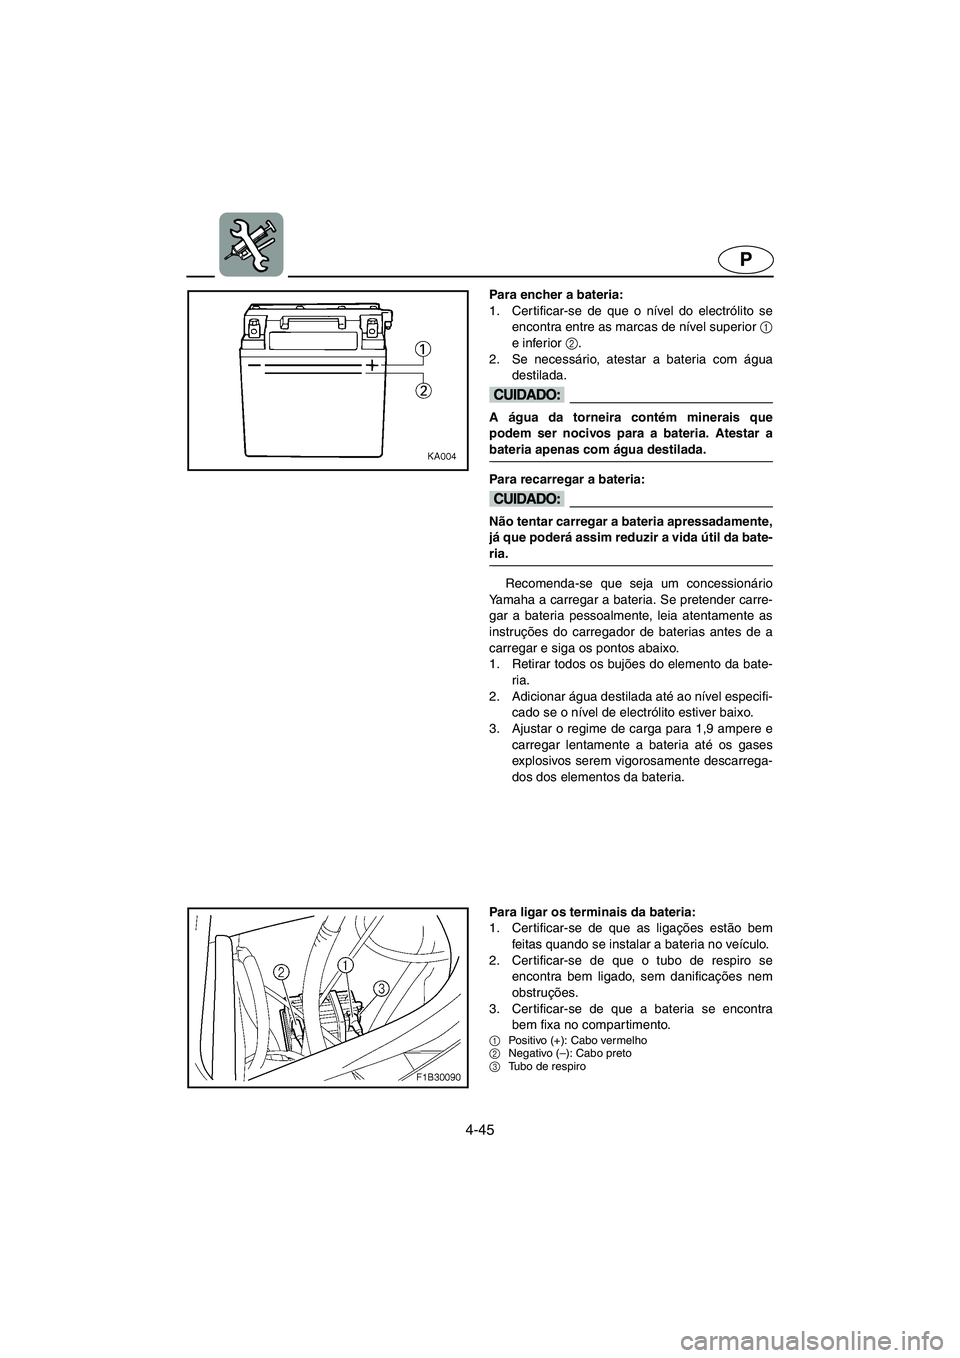 YAMAHA FX HO 2006  Manuale duso (in Italian) 4-45
P
Para encher a bateria: 
1. Certificar-se de que o nível do electrólito se
encontra entre as marcas de nível superior 1
e inferior 2
. 
2. Se necessário, atestar a bateria com água
destilad